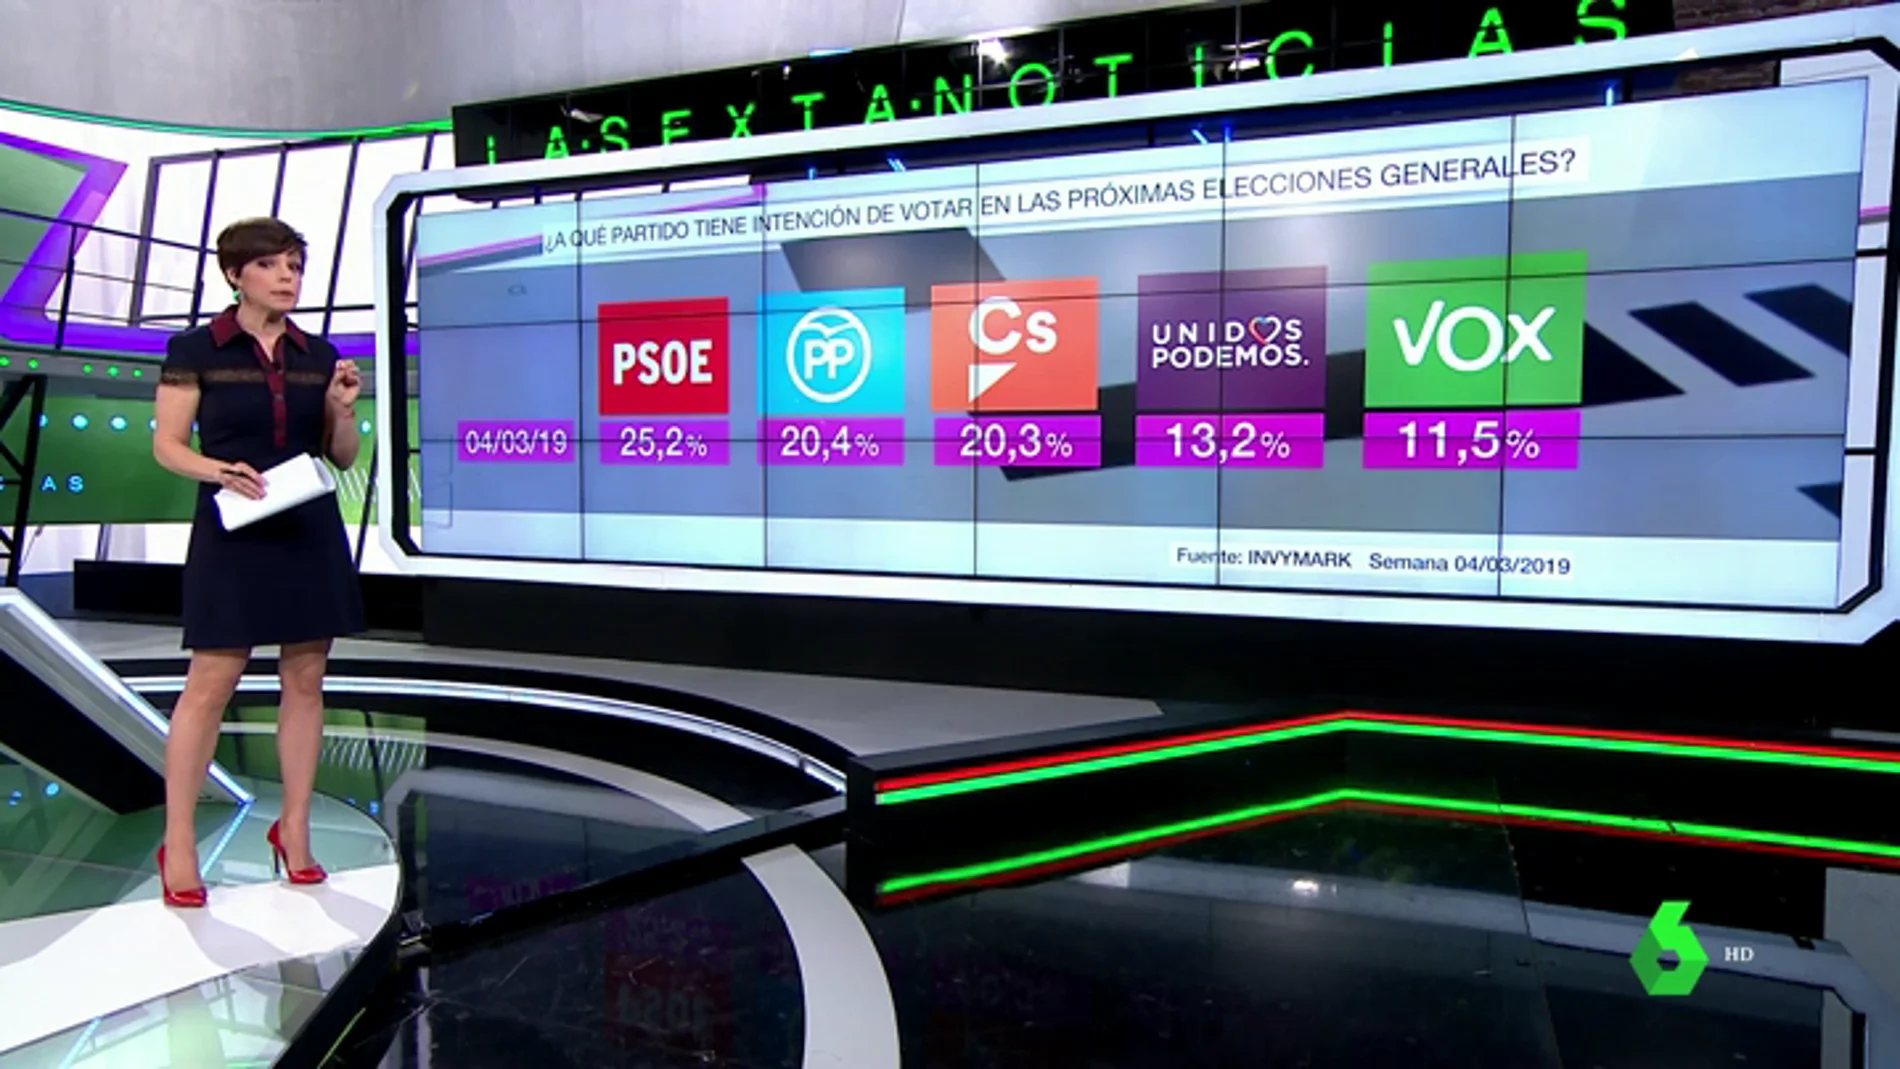 El PSOE ganaría las elecciones generales con el 25,2% de votos, casi cinco puntos más que PP y Ciudadanos